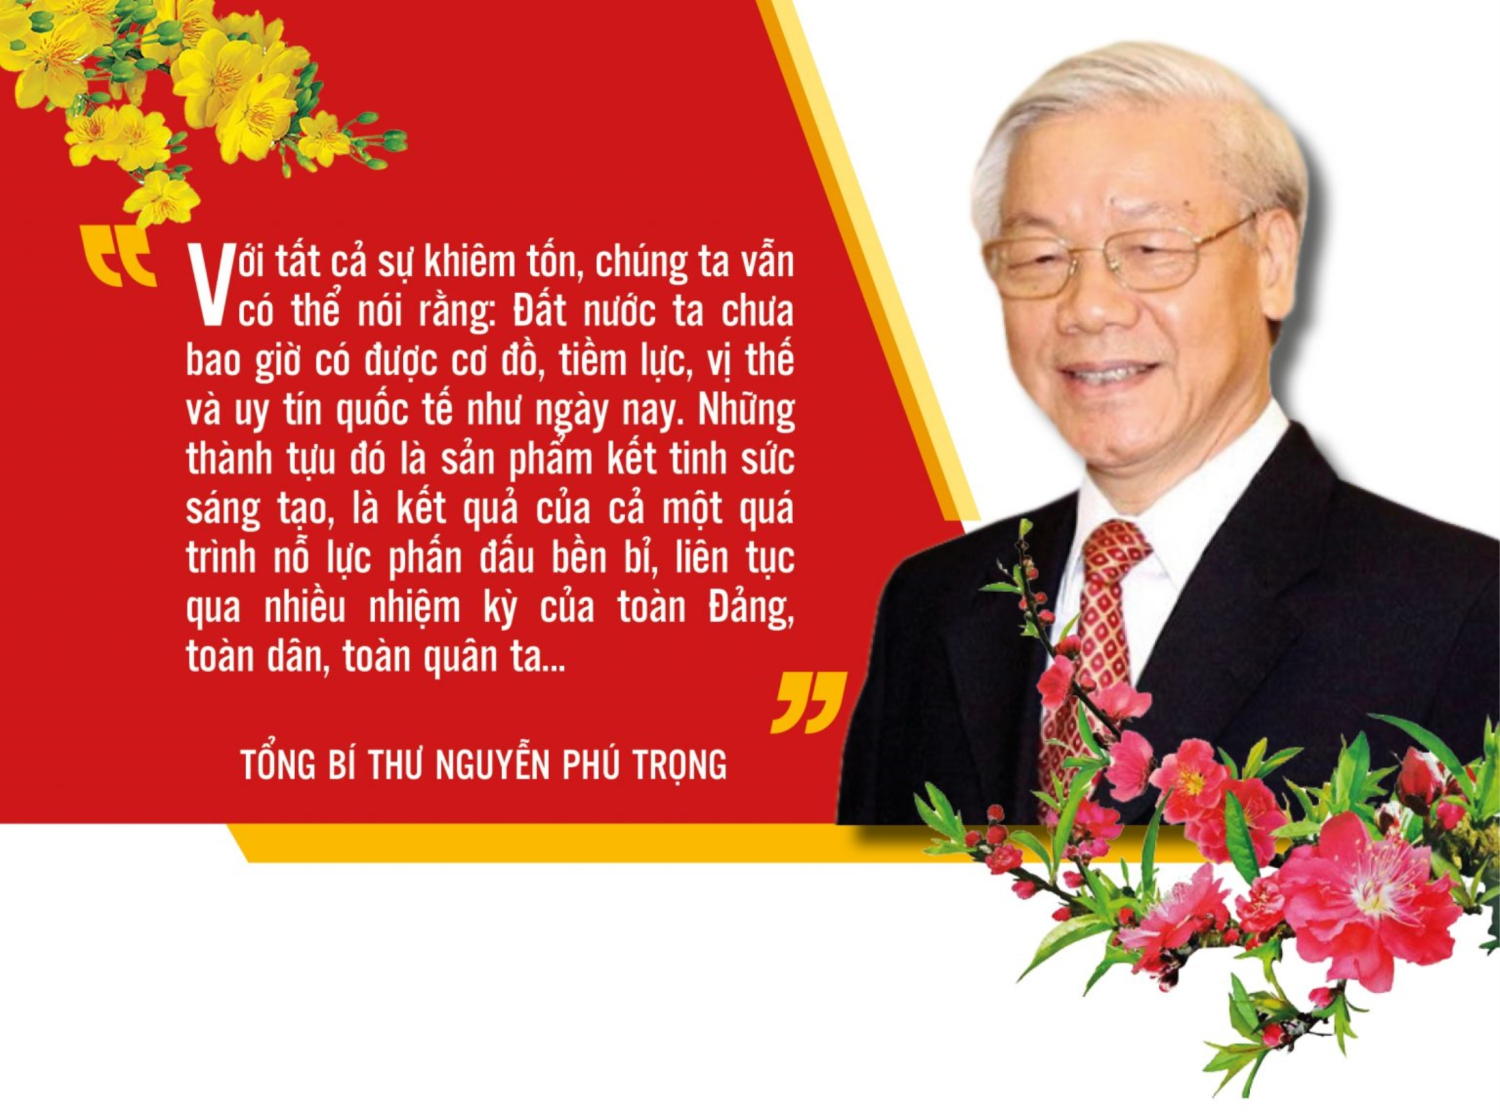 Bài viết “Tự hào và tin tưởng dưới lá cờ vẻ vang của Đảng, quyết tâm xây dựng một nước Việt Nam ngày càng giàu mạnh, văn minh, văn hiến và anh hùng” của Tổng Bí thư Nguyễn Phú Trọng